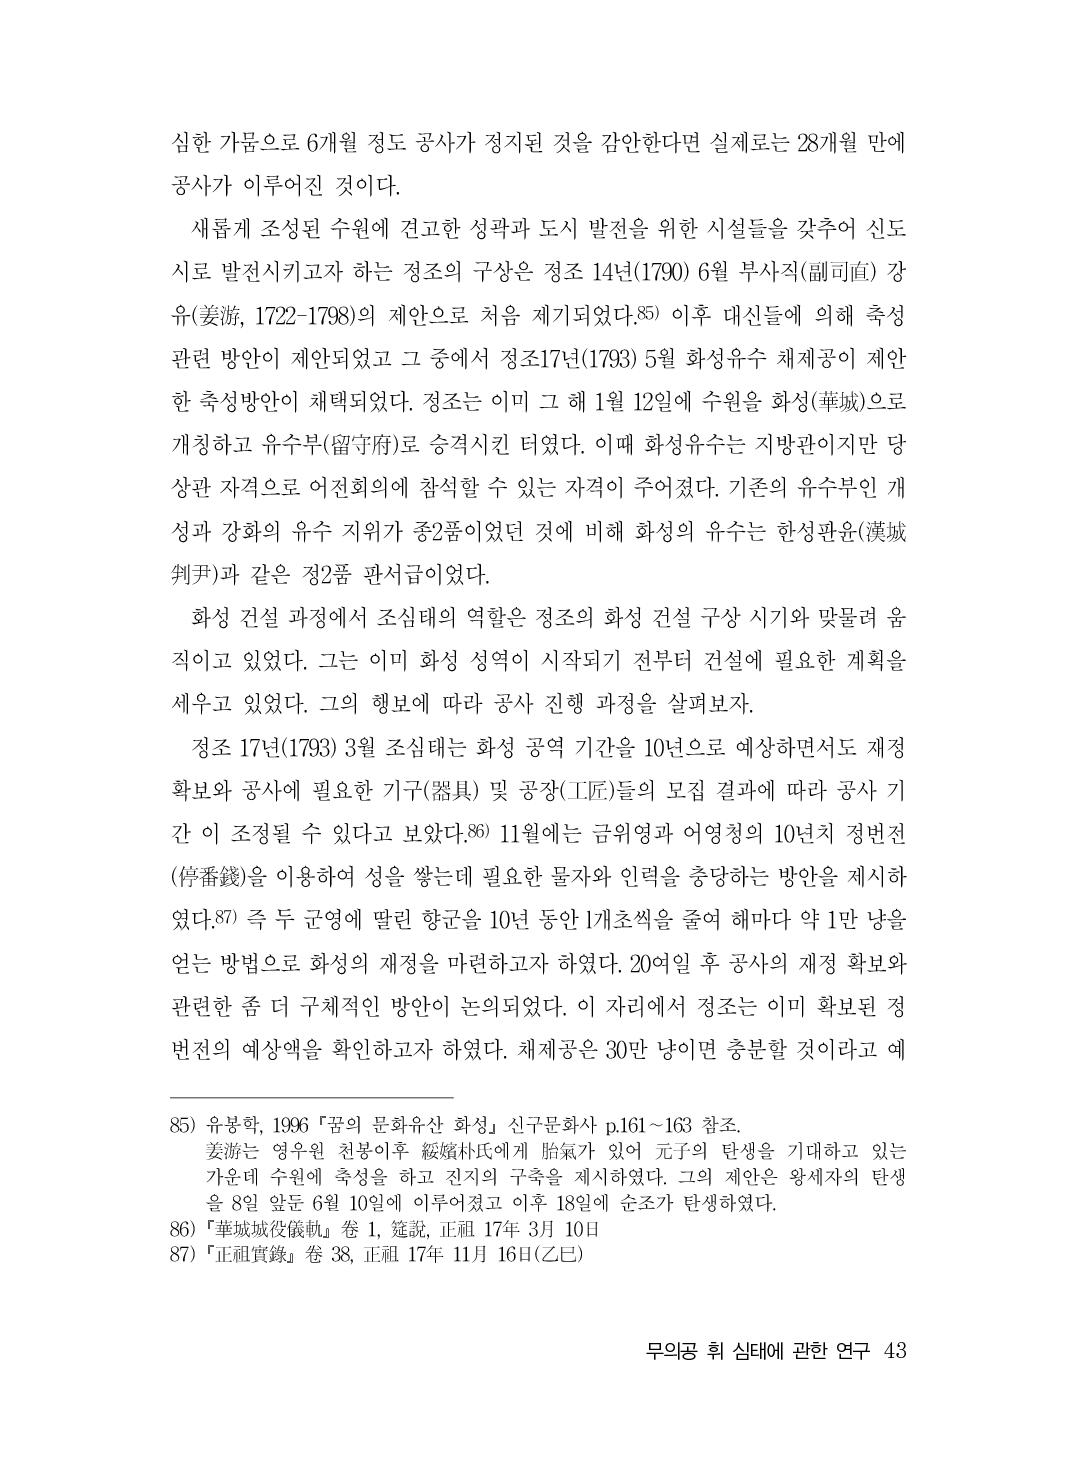 (전체) 송산종보(27호)(최종)_44.jpg